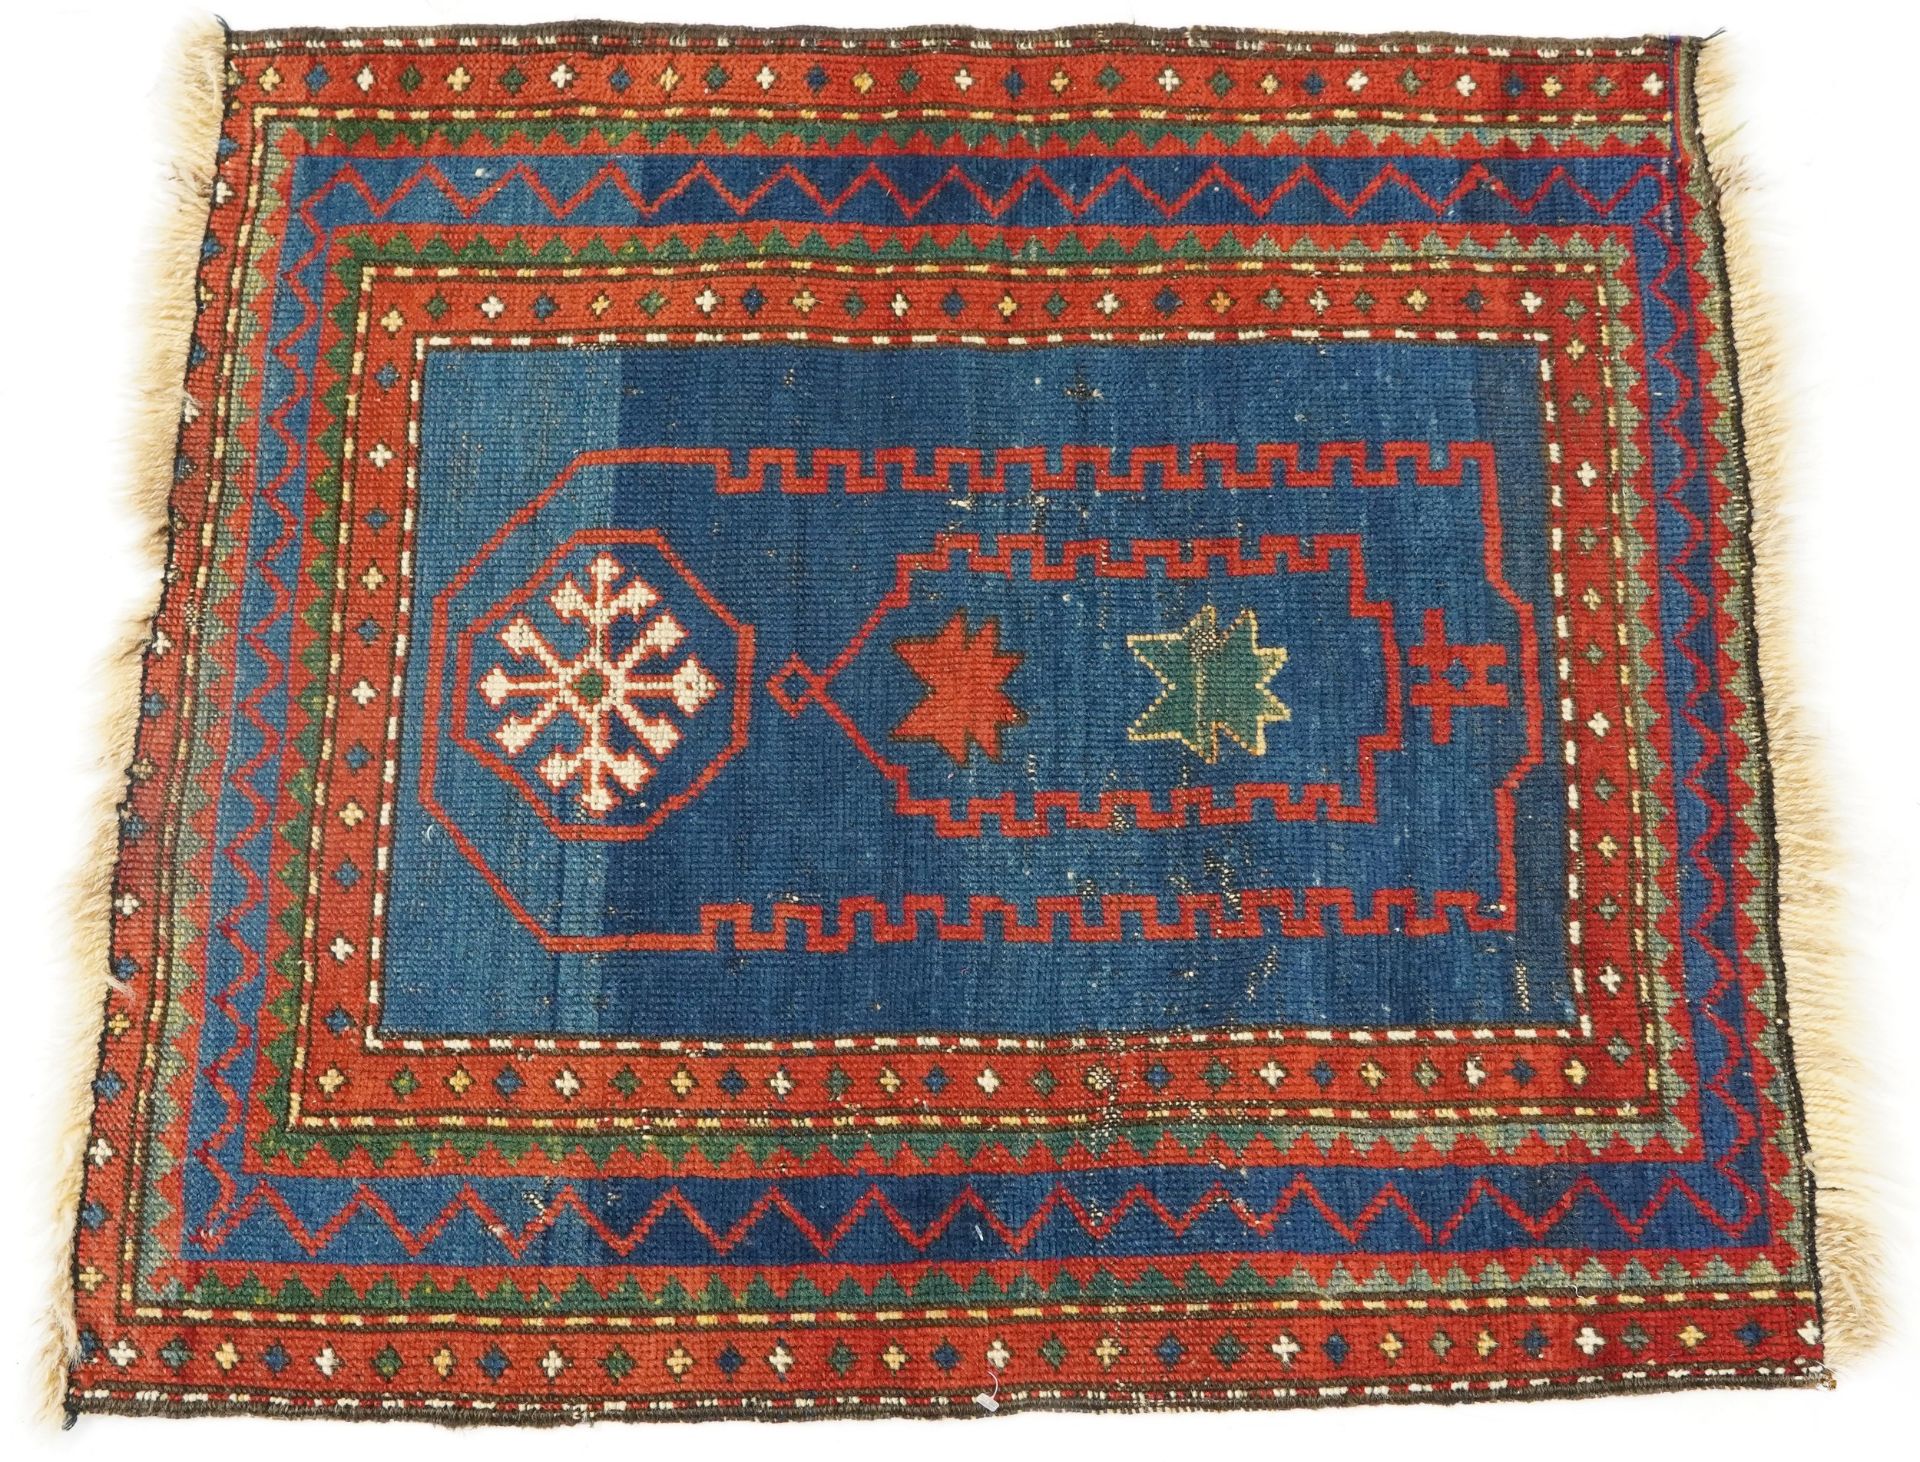 Rectangular Caucasian rug, 80cm x 72cm